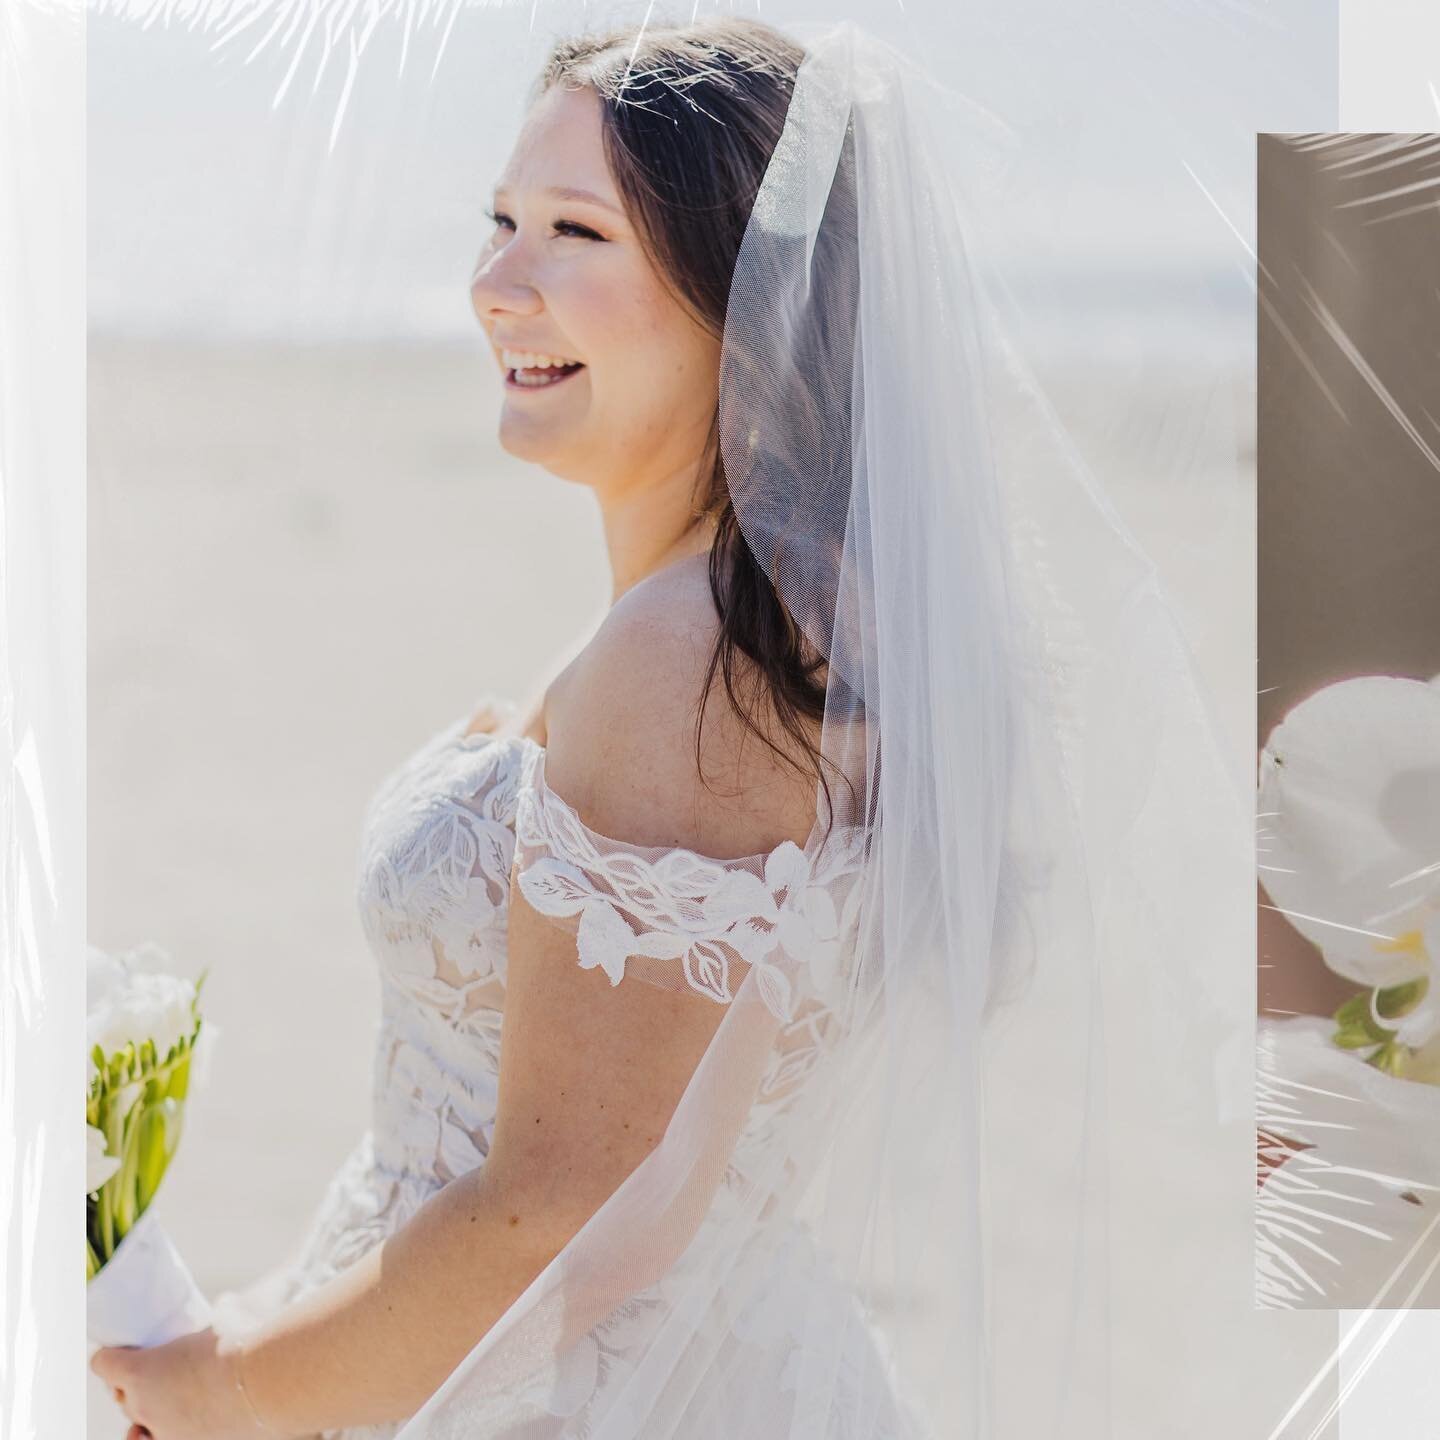 Beachy bridal details 🐚💐🌊 #jeaniehortonphotography #bayareaweddingphotographer #bridaldetails #bridedetails #weddingdetails #bouquet #gettingreadyforwedding #weddingjewellery #gettingreadyphotos #bridalportrait #orchidbouquet #whitebouquet #whiteo